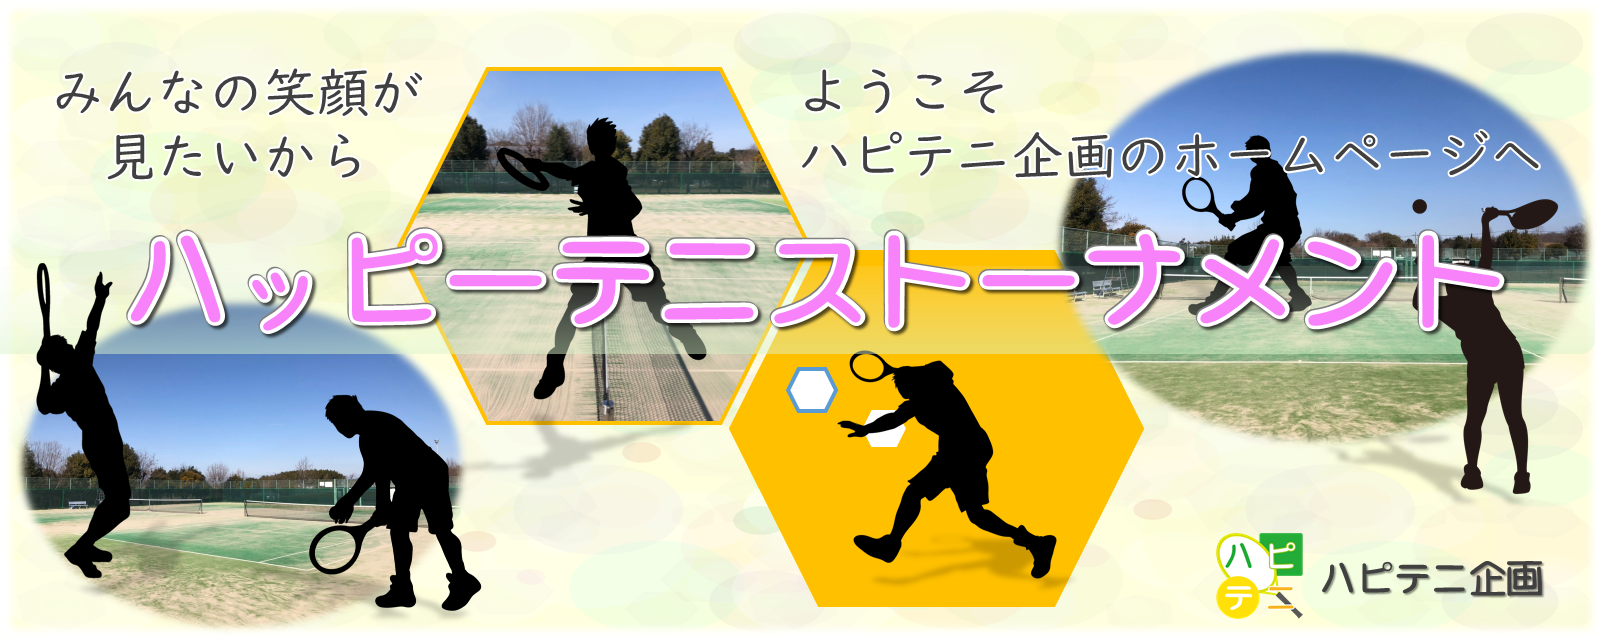 大阪の草テニストーナメント ハッピーテニストーナメント